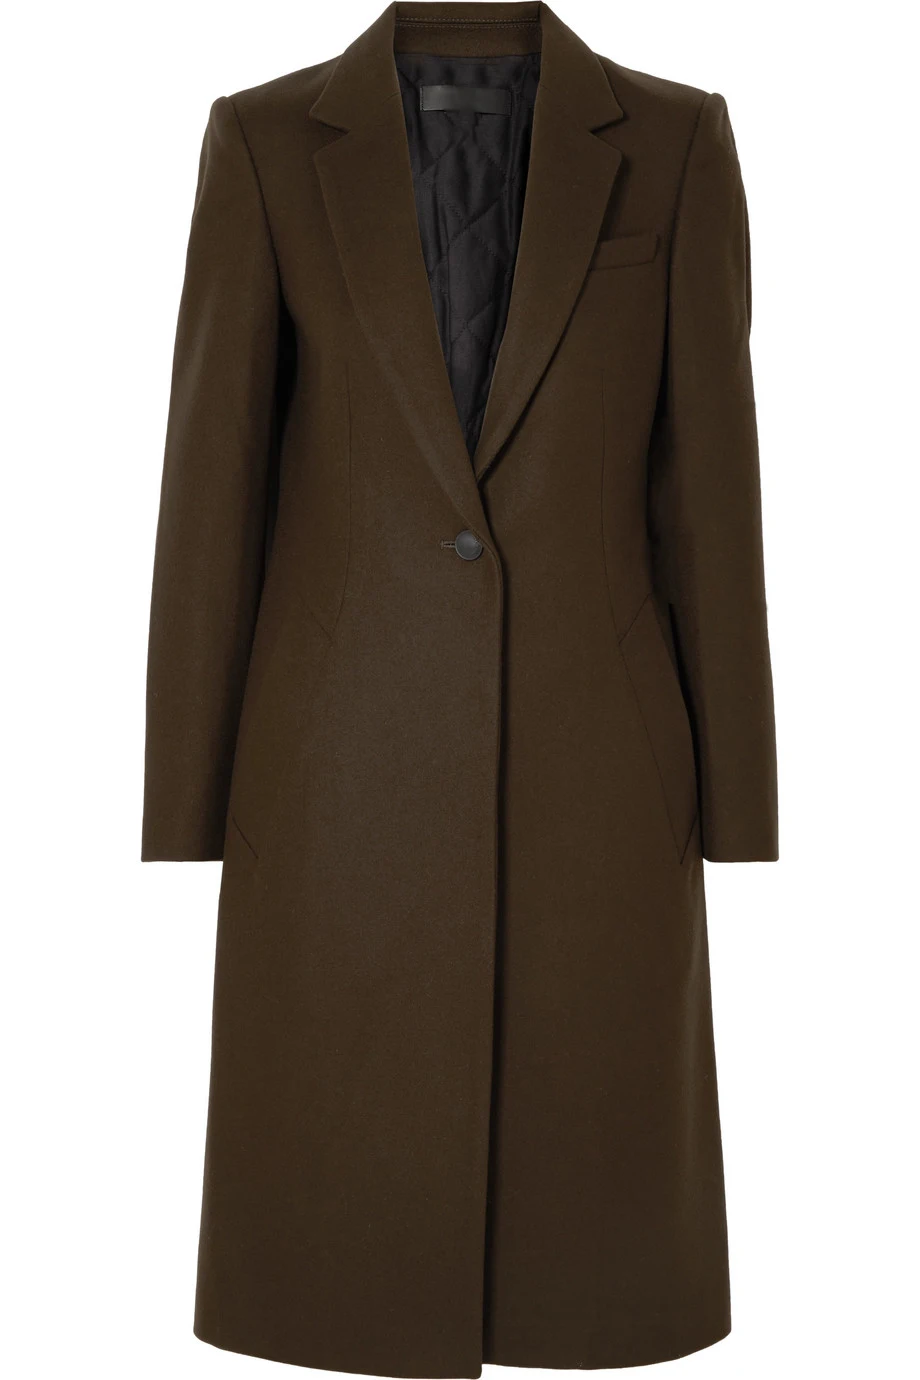 Офисное женское новое шерстяное пальто, куртка, Женское зимнее пальто, новое модное шерстяное пальто средней длины, элегантная верхняя одежда, Женское пальто XXL